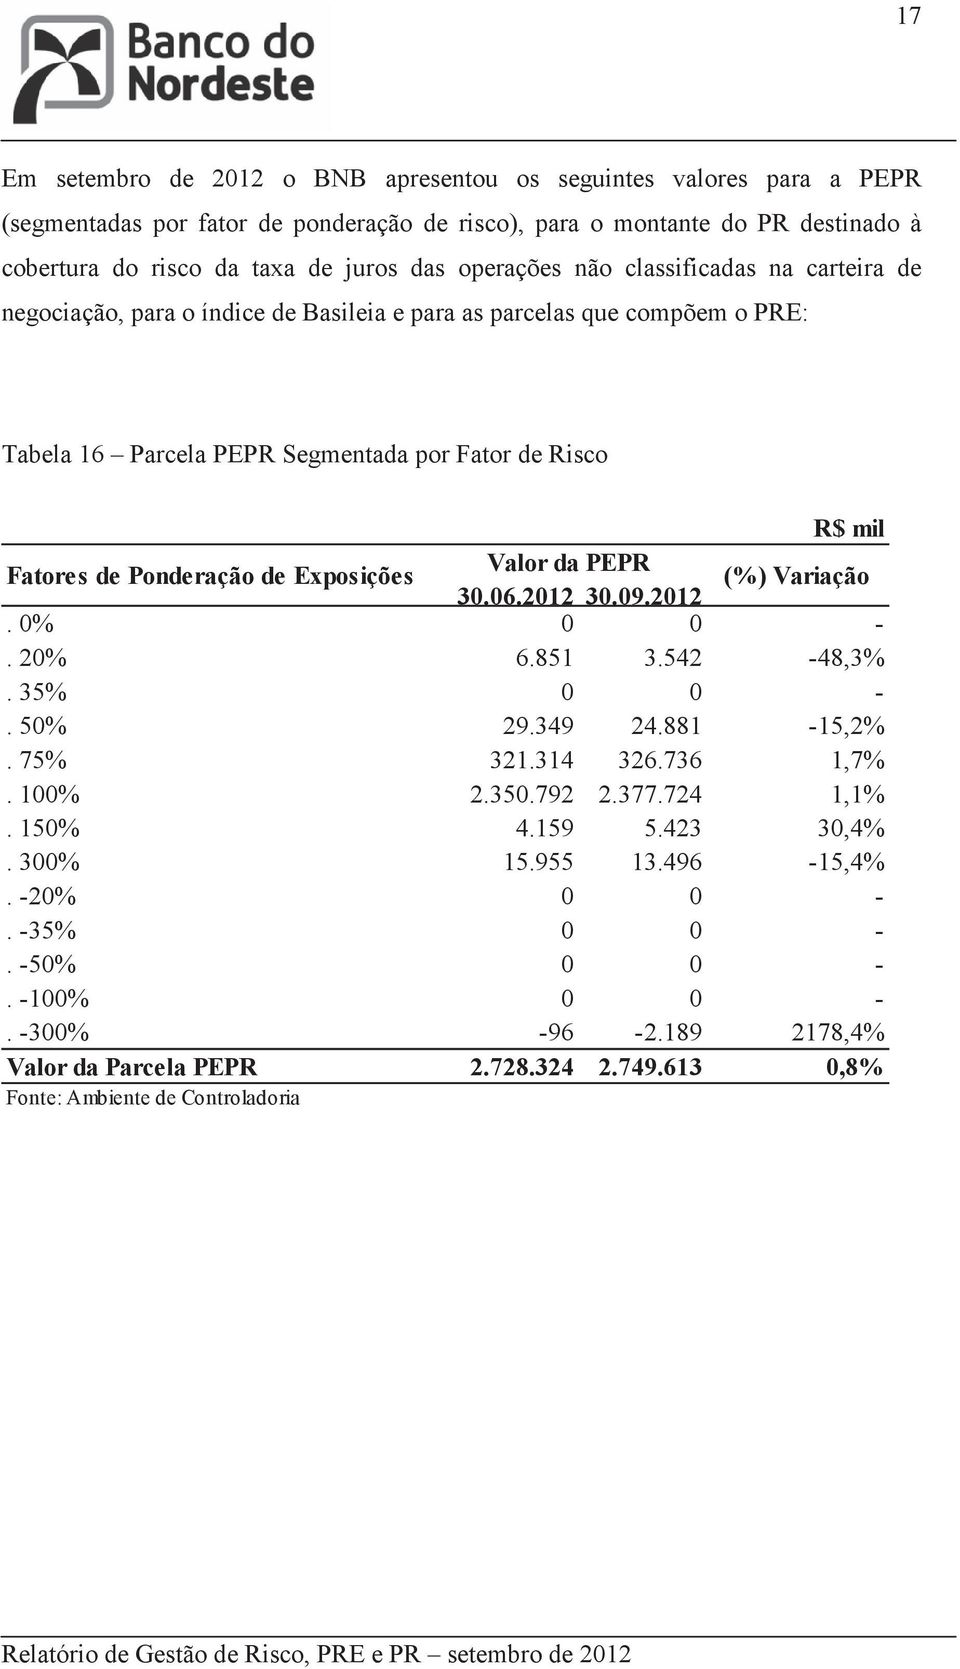 Fatores de Ponderação de Exposições Valor da PEPR (%) Variação 30.06.2012 30.09.2012. 0% 0 0 -. 20% 6.851 3.542-48,3%. 35% 0 0 -. 50% 29.349 24.881-15,2%. 75% 321.314 326.736 1,7%.